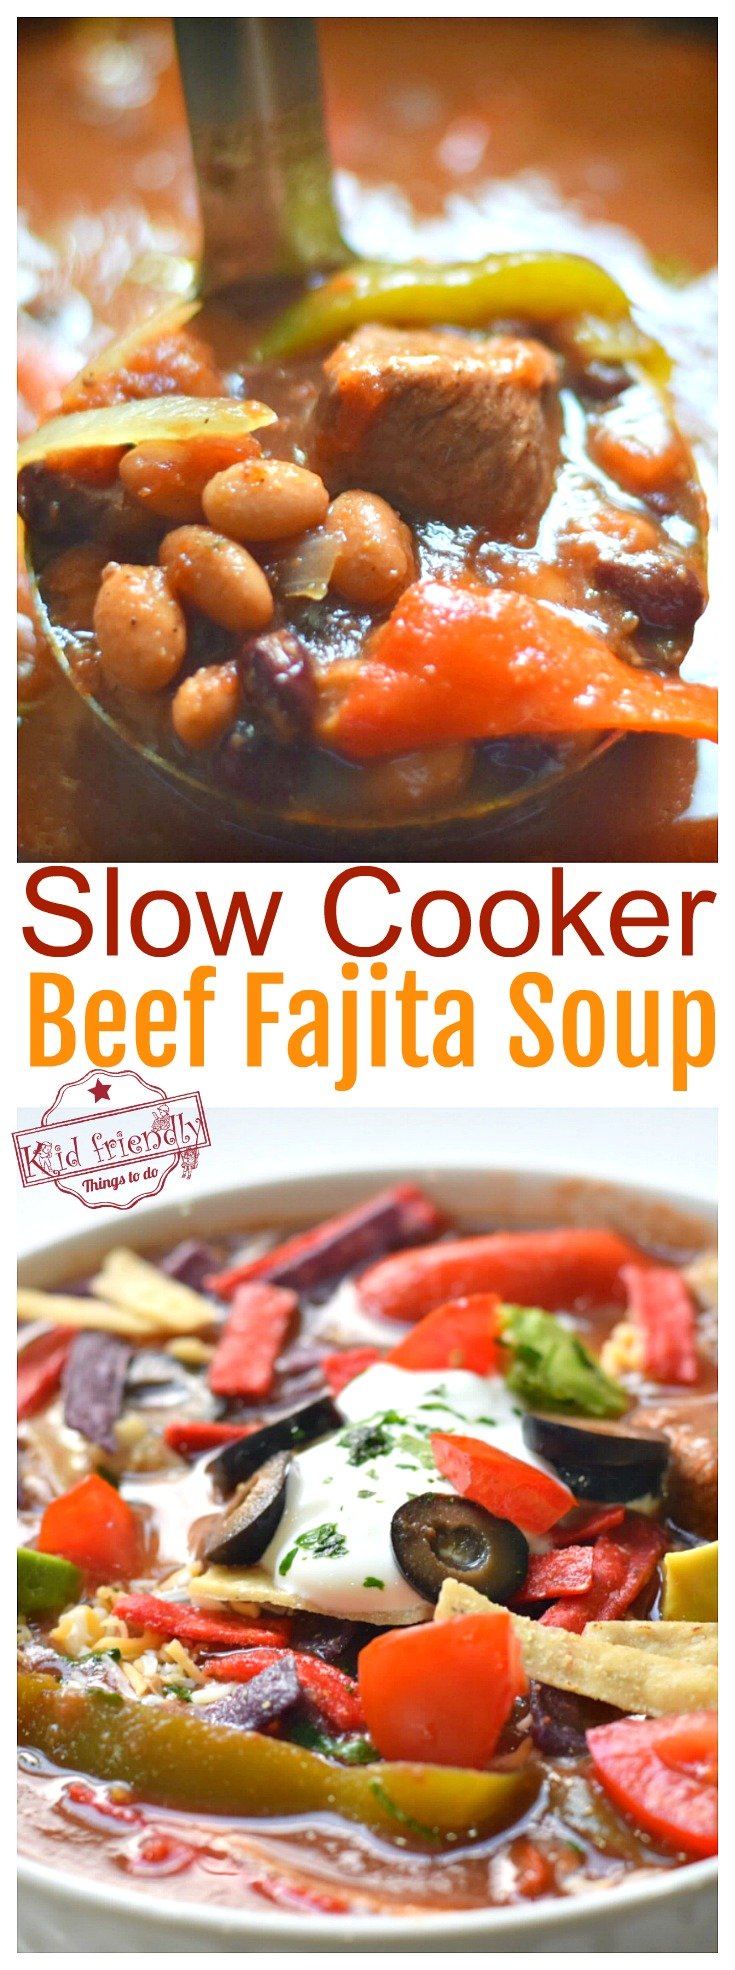 Easy and Delicious Slow Cooker Beef Fajita Soup Recipe - Healthy Beef Stew Meat Crockpot Recipe - www.kidfriendlythingstodo.com